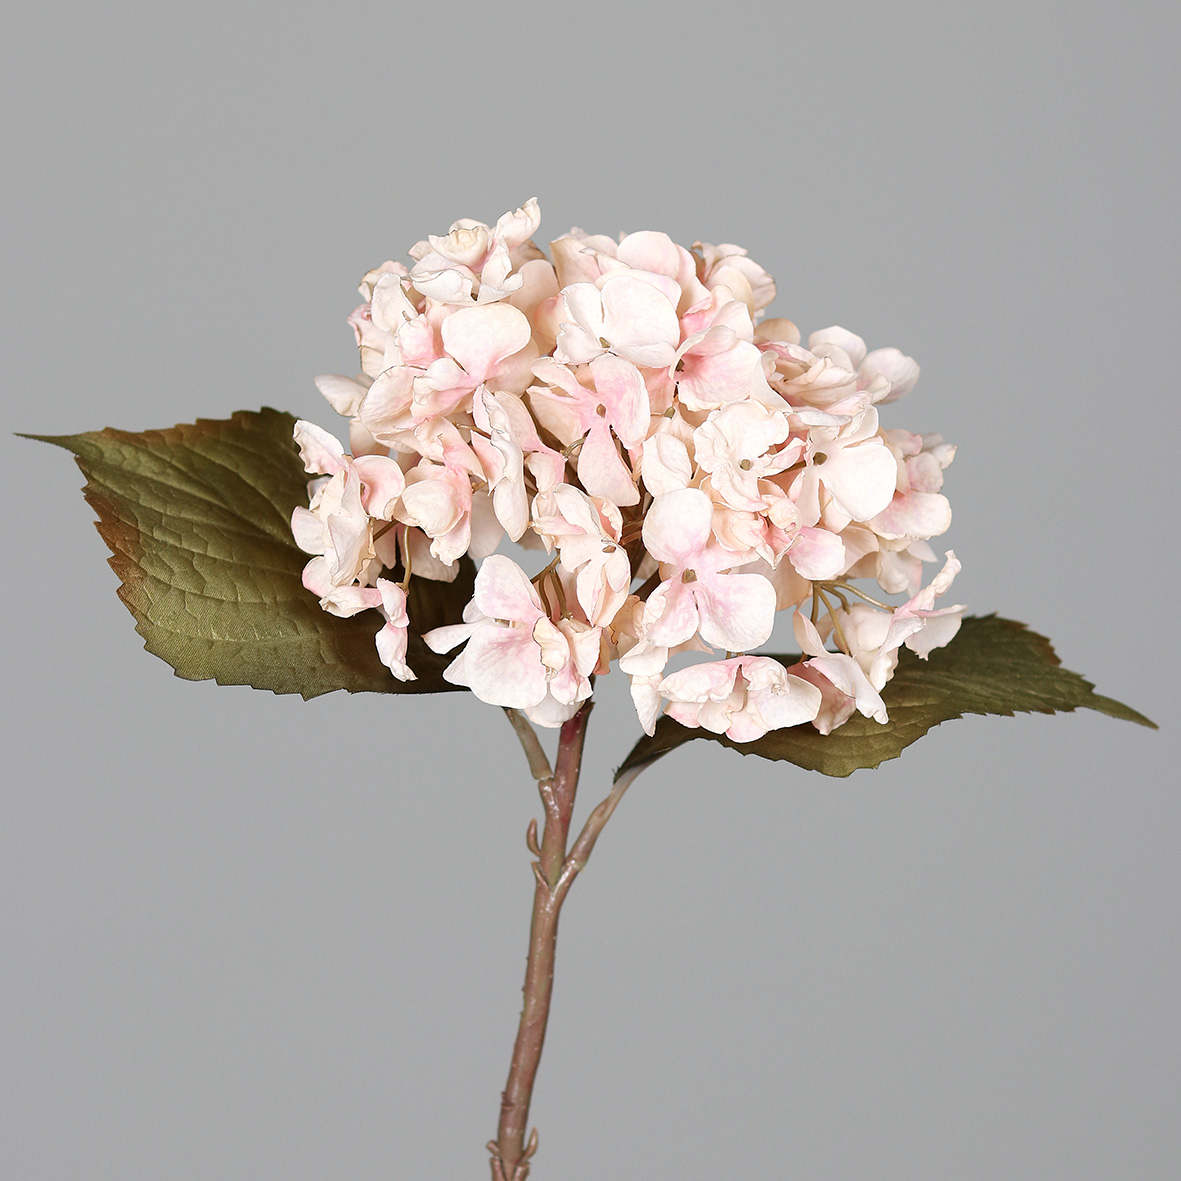 Hortensie Nature 45cm rosee DP Seidenblumen Kunstlbumen künstliche Blumen Hortensien Hydrangea